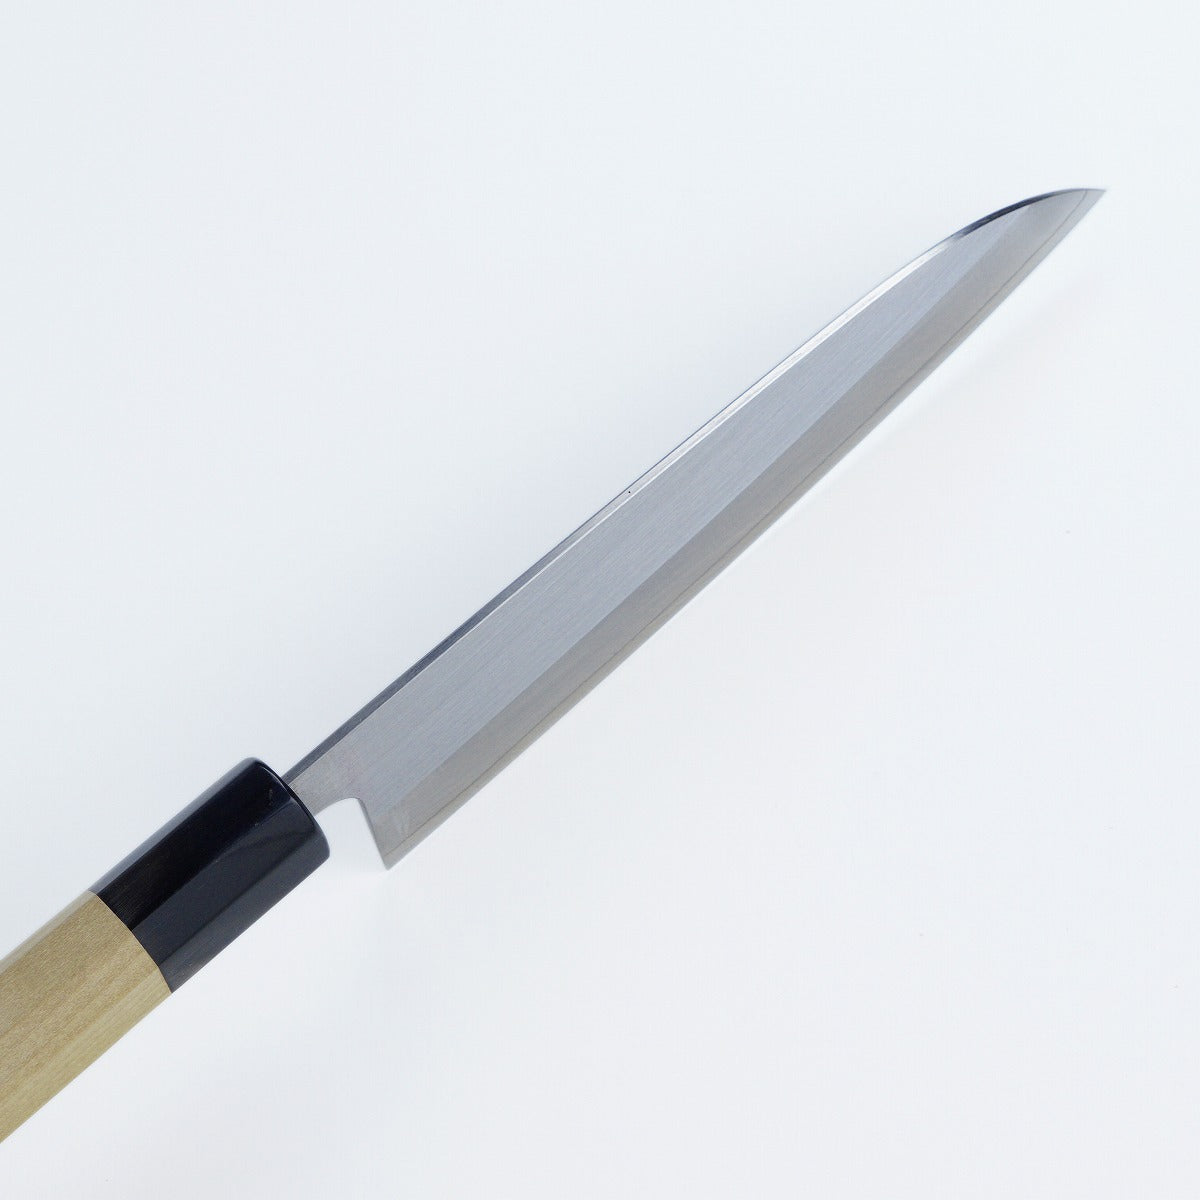 三德刀 (多用途廚刀) 粉未HSS不鏽鋼, 165mm